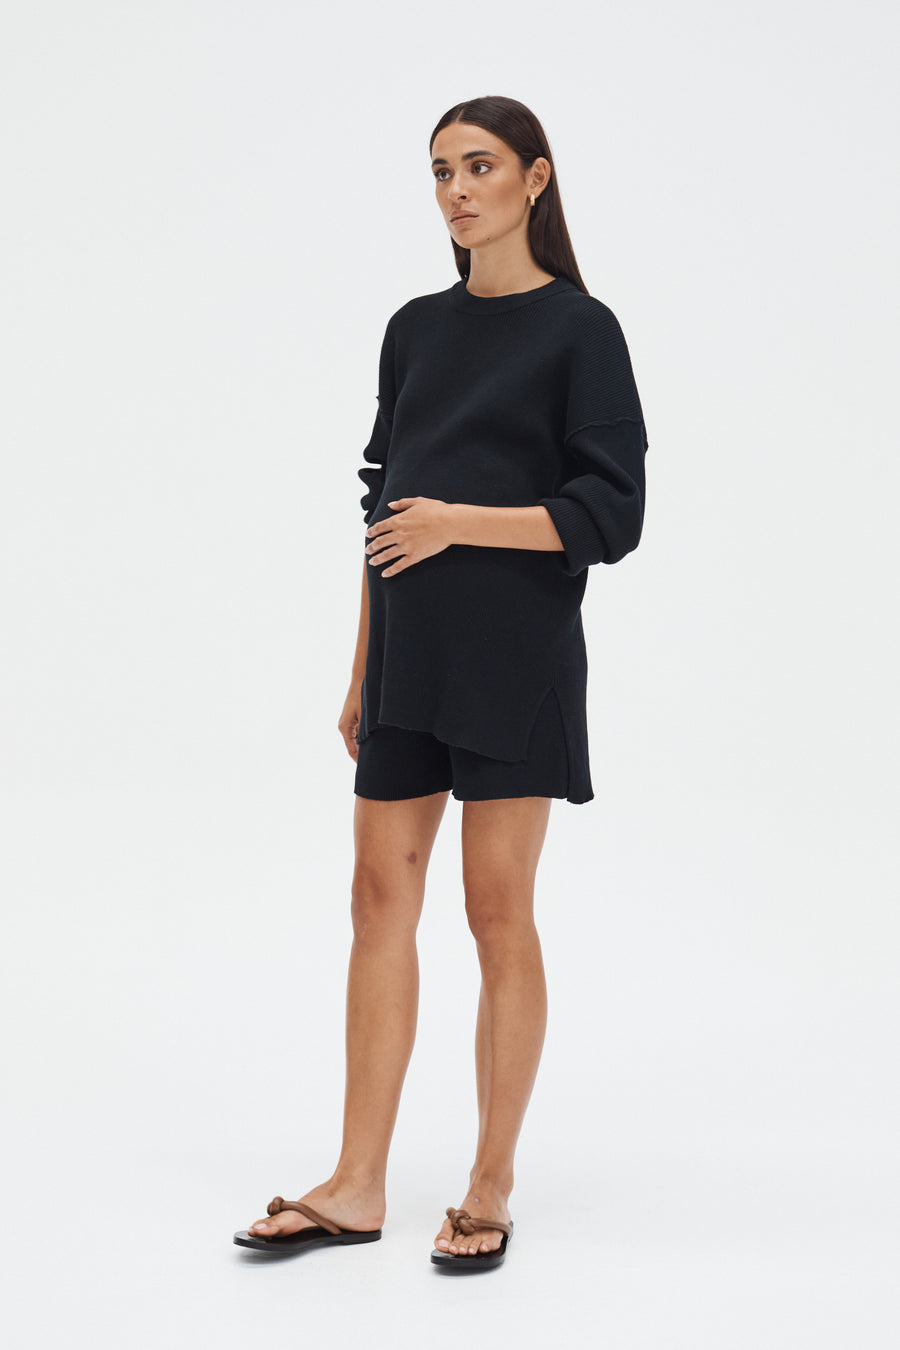 Stylish Maternity Shorts (Black) 3